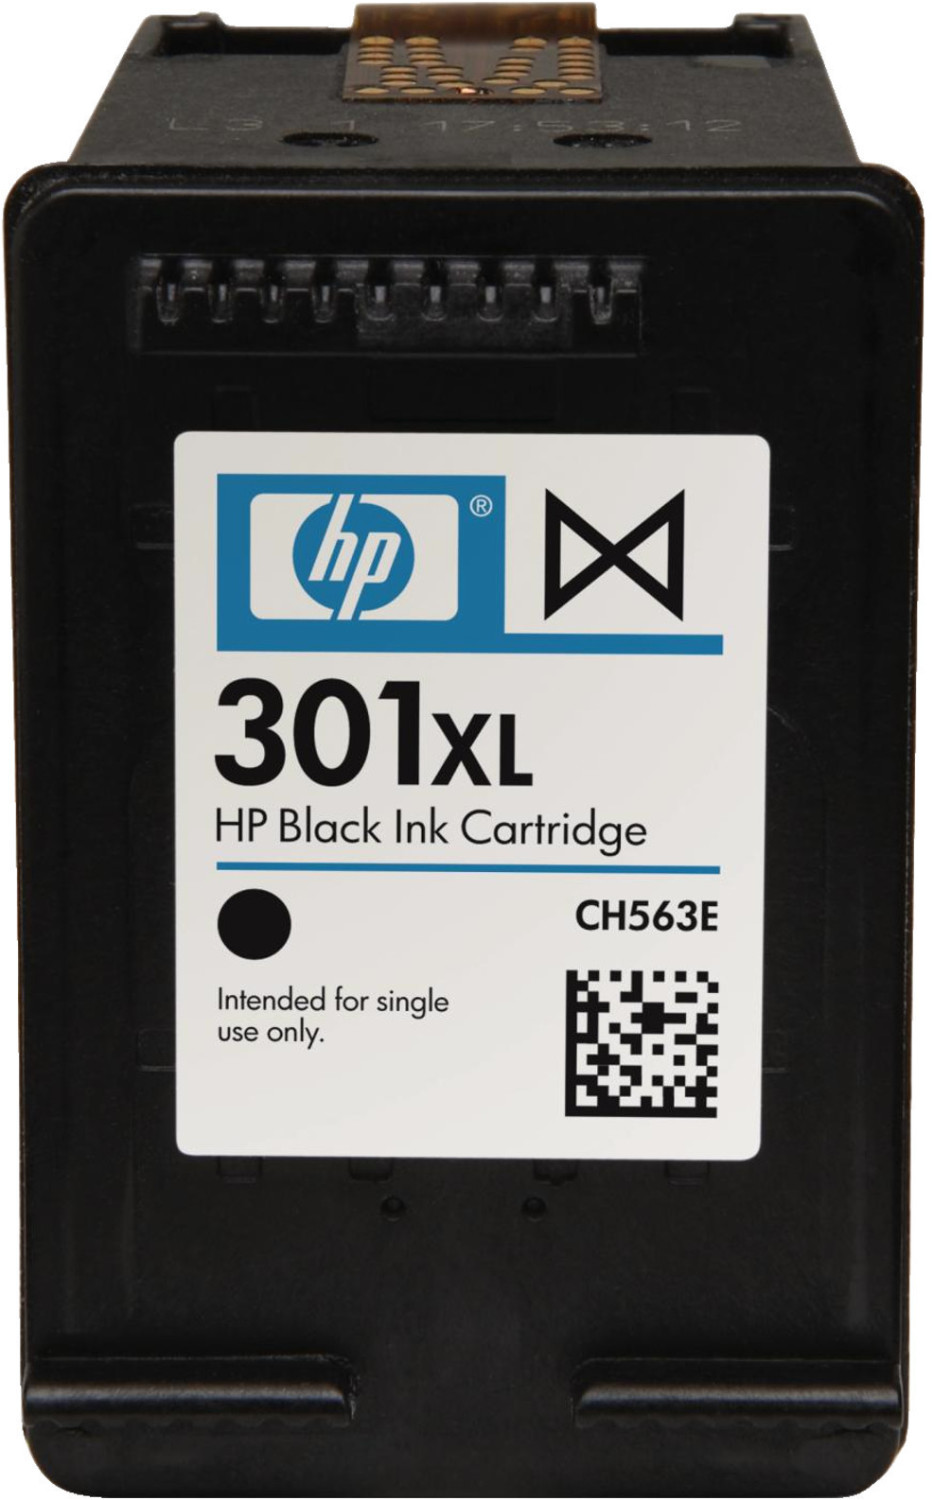 ✓ Cartouche compatible avec HP 301XL noir couleur Noir en stock